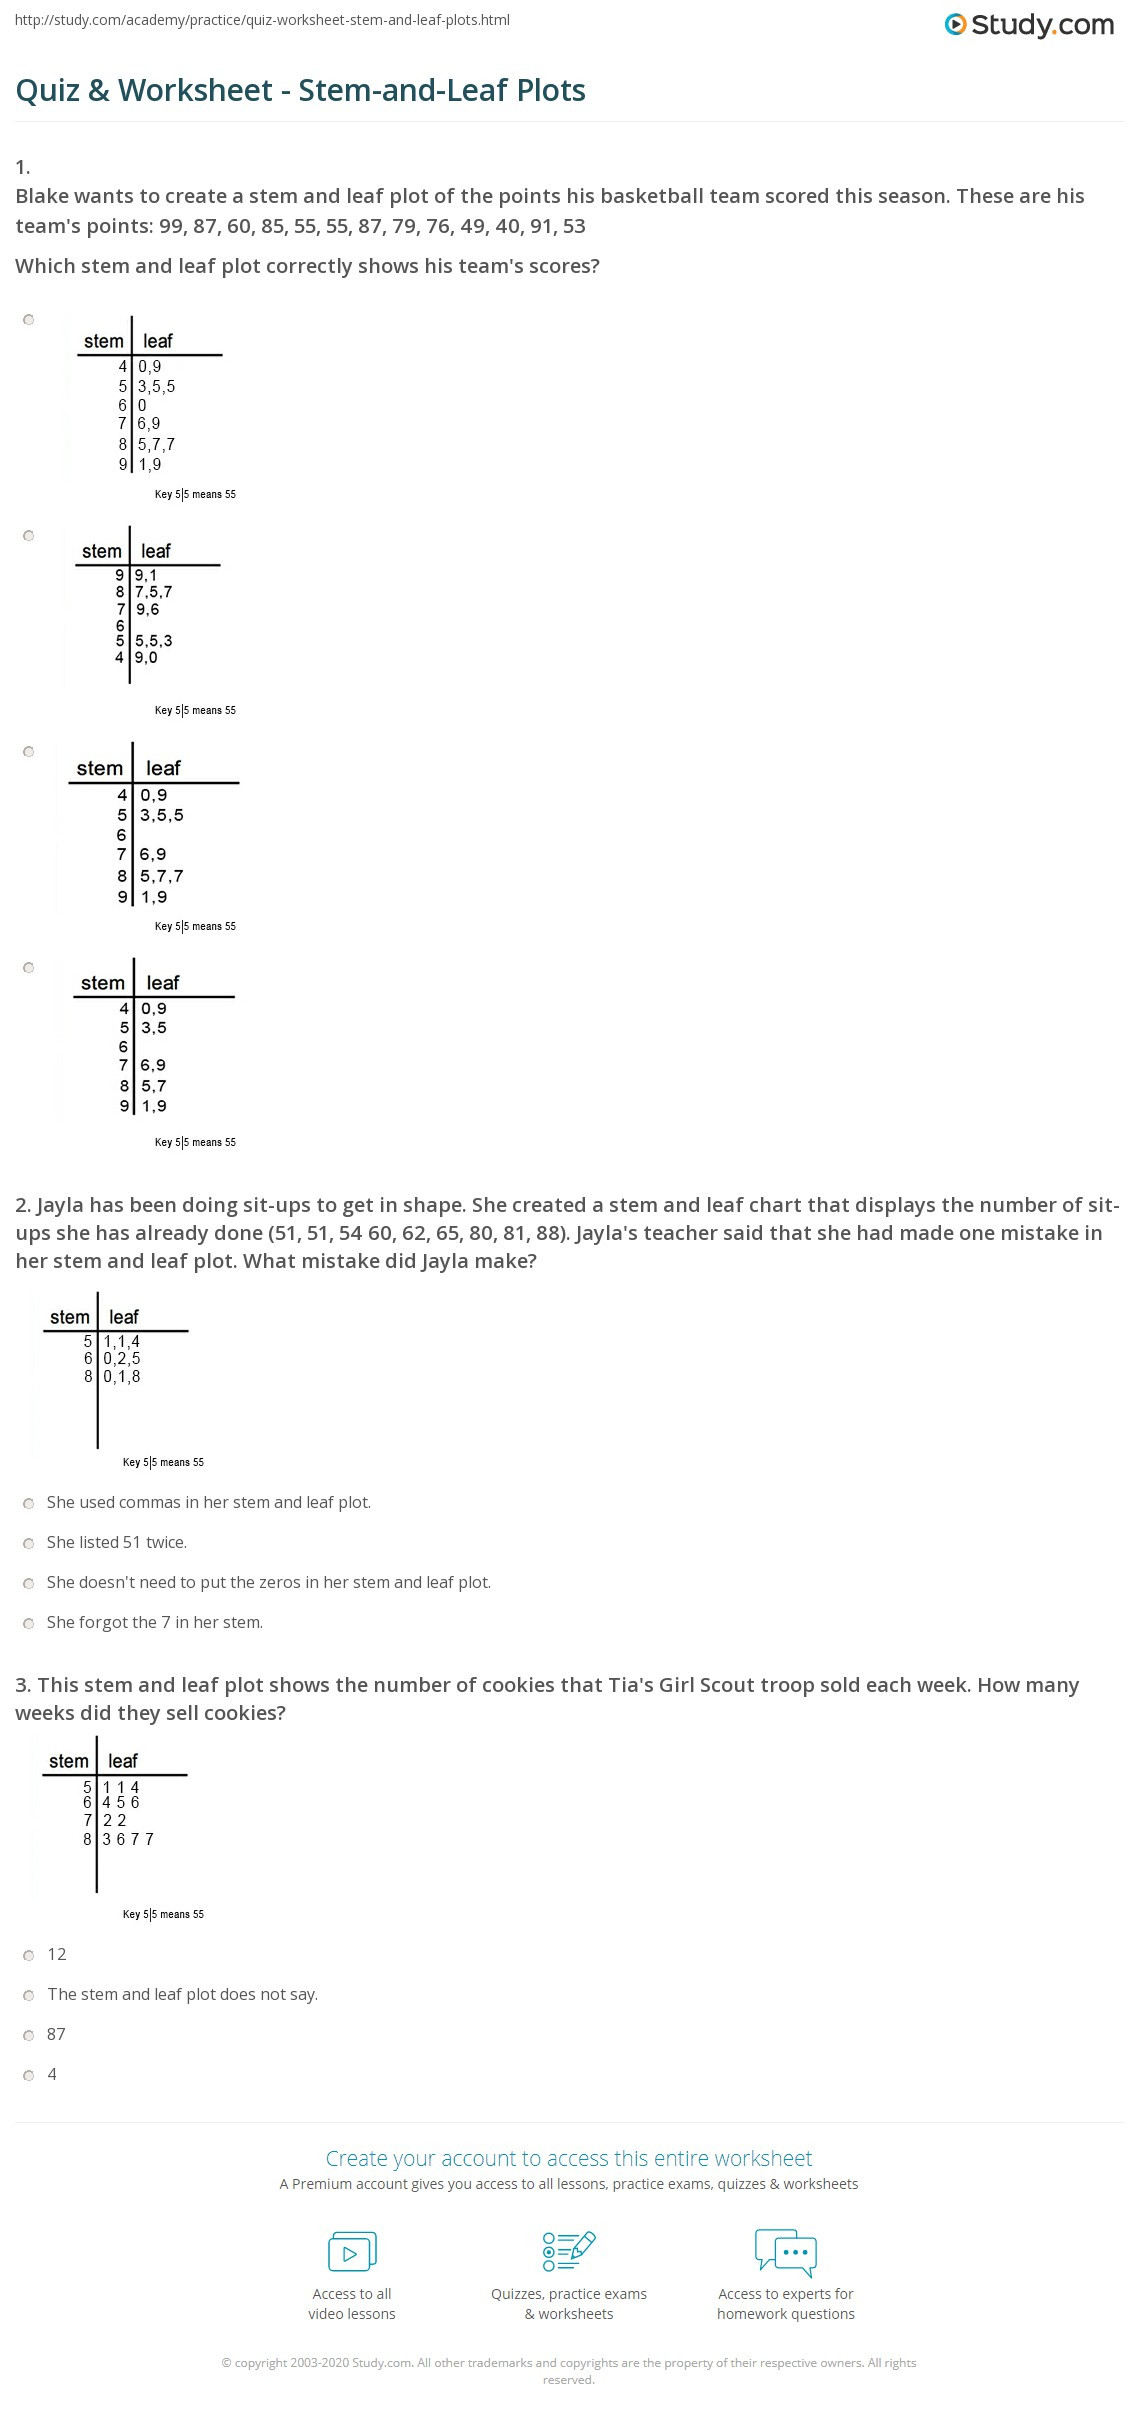 Stem and Leaf Plots Worksheet Quiz &amp; Worksheet Stem and Leaf Plots